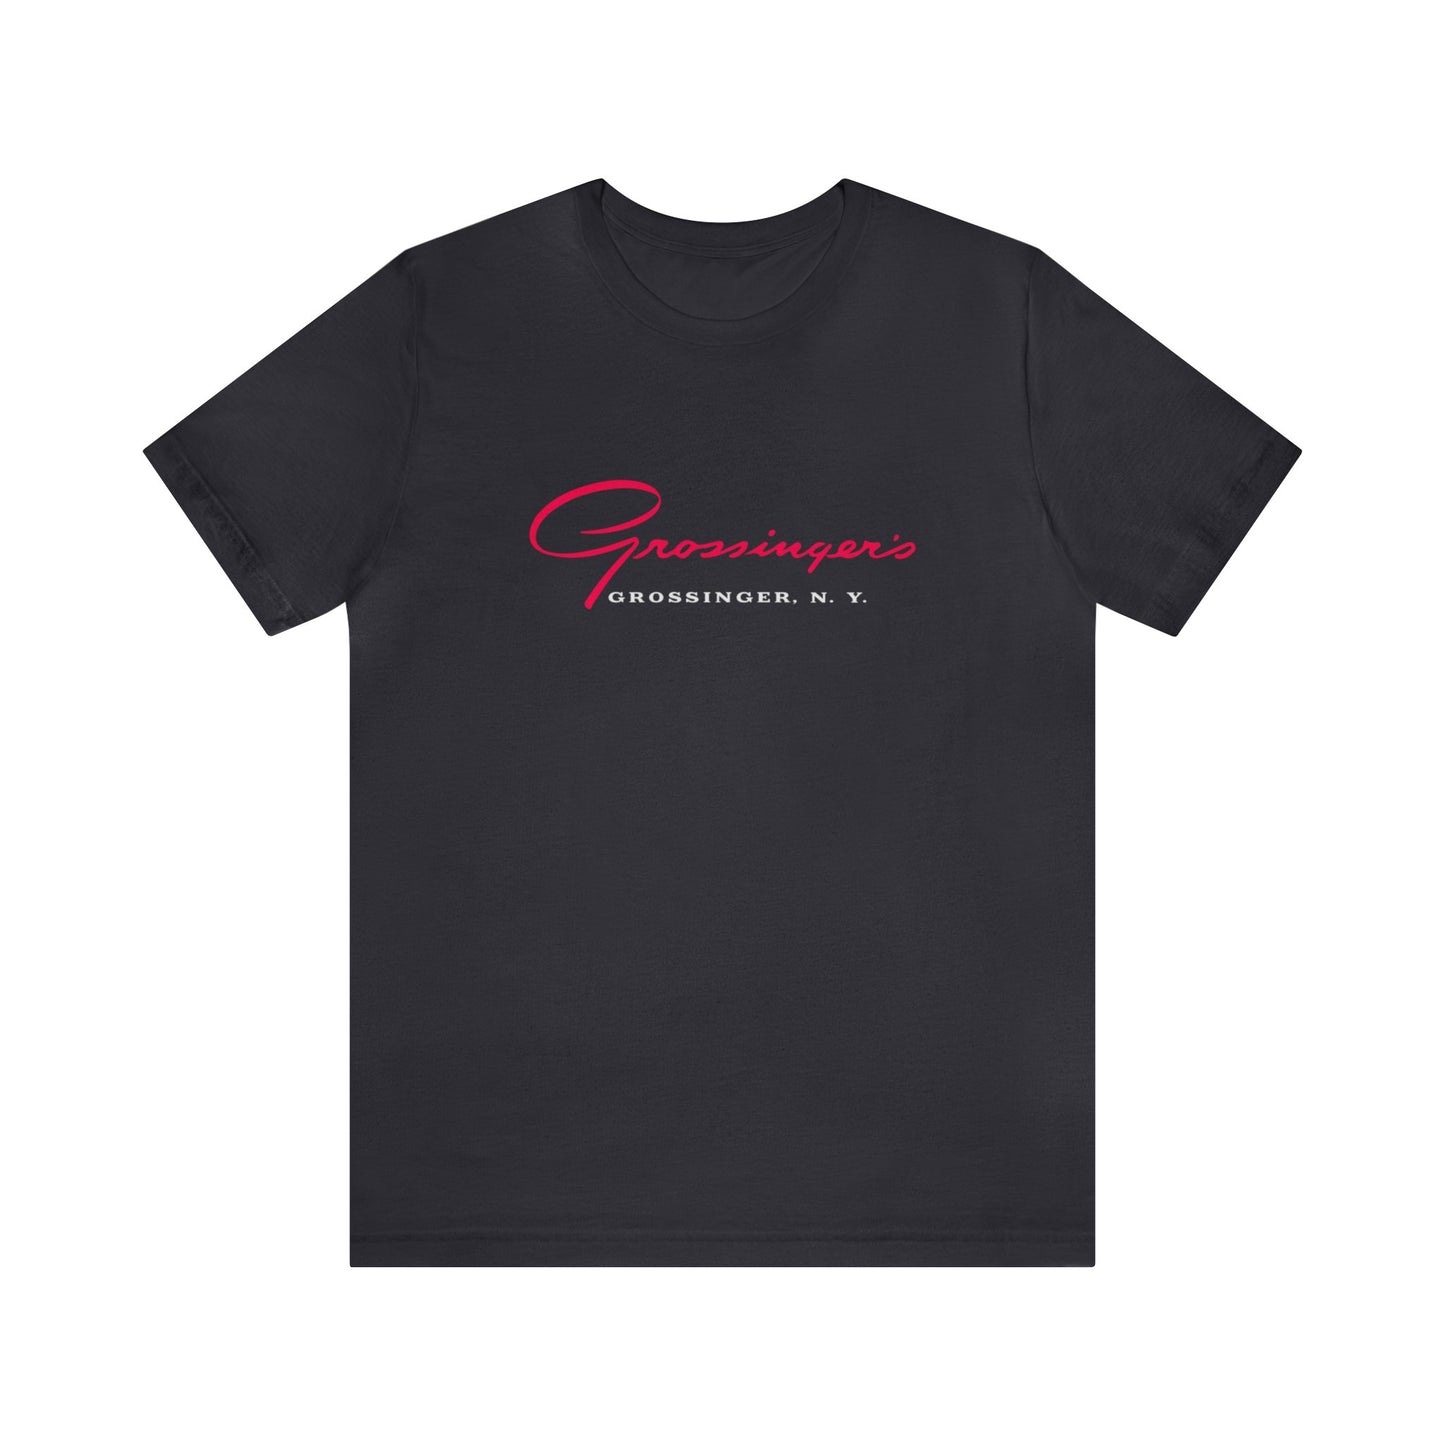 Grossinger's - Unisex T-Shirt